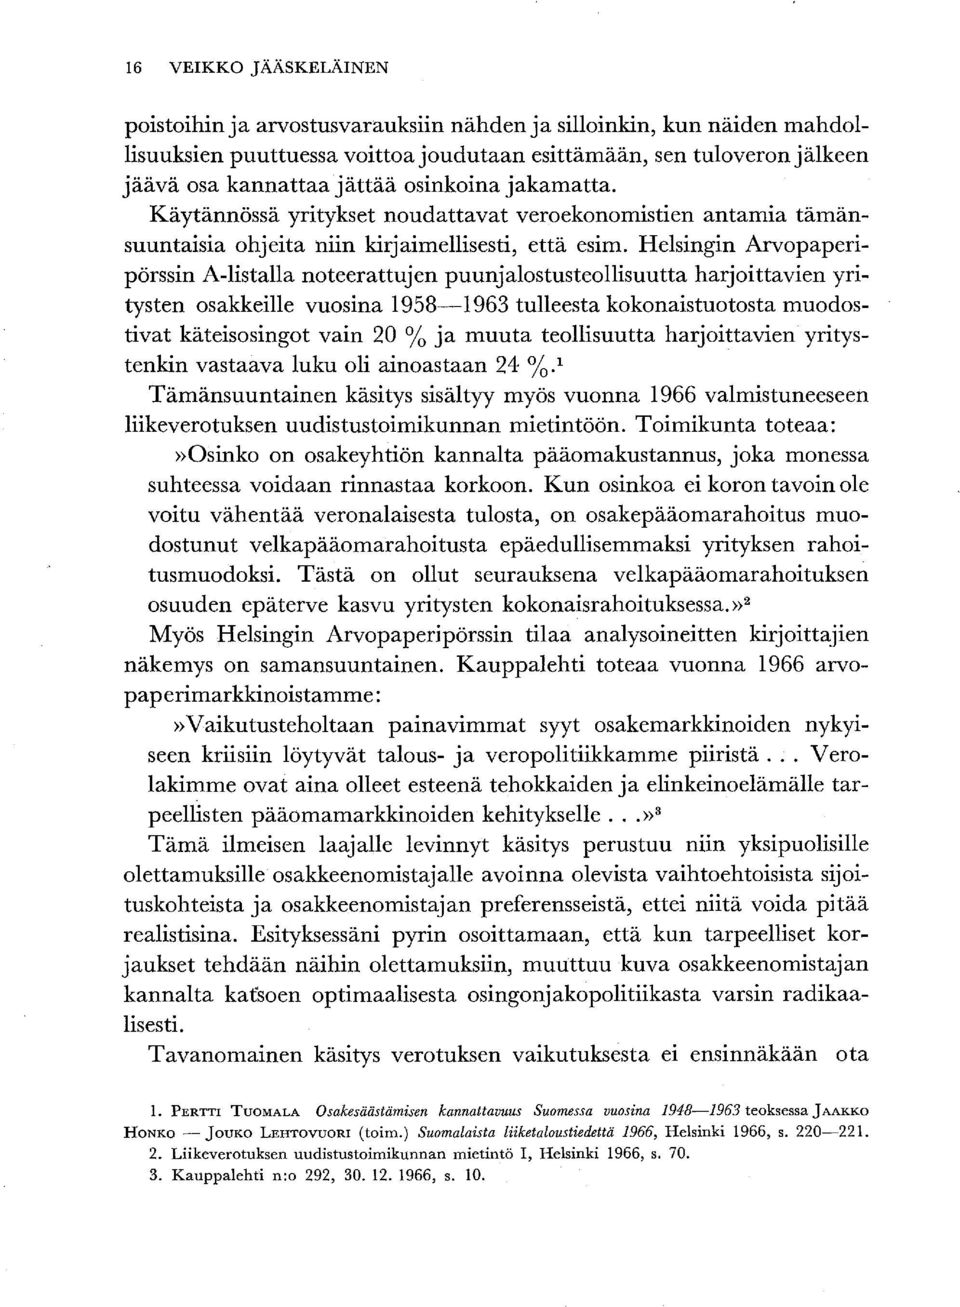 Helsingin Arvopaperipörssin A-listalla noteerattujen puunjalostusteollisuutta harjoittavien yritysten osakkeille vuosina 1958-1963 tulleesta kokonaistuotosta muodostivat käteisosingot vain 20 % ja